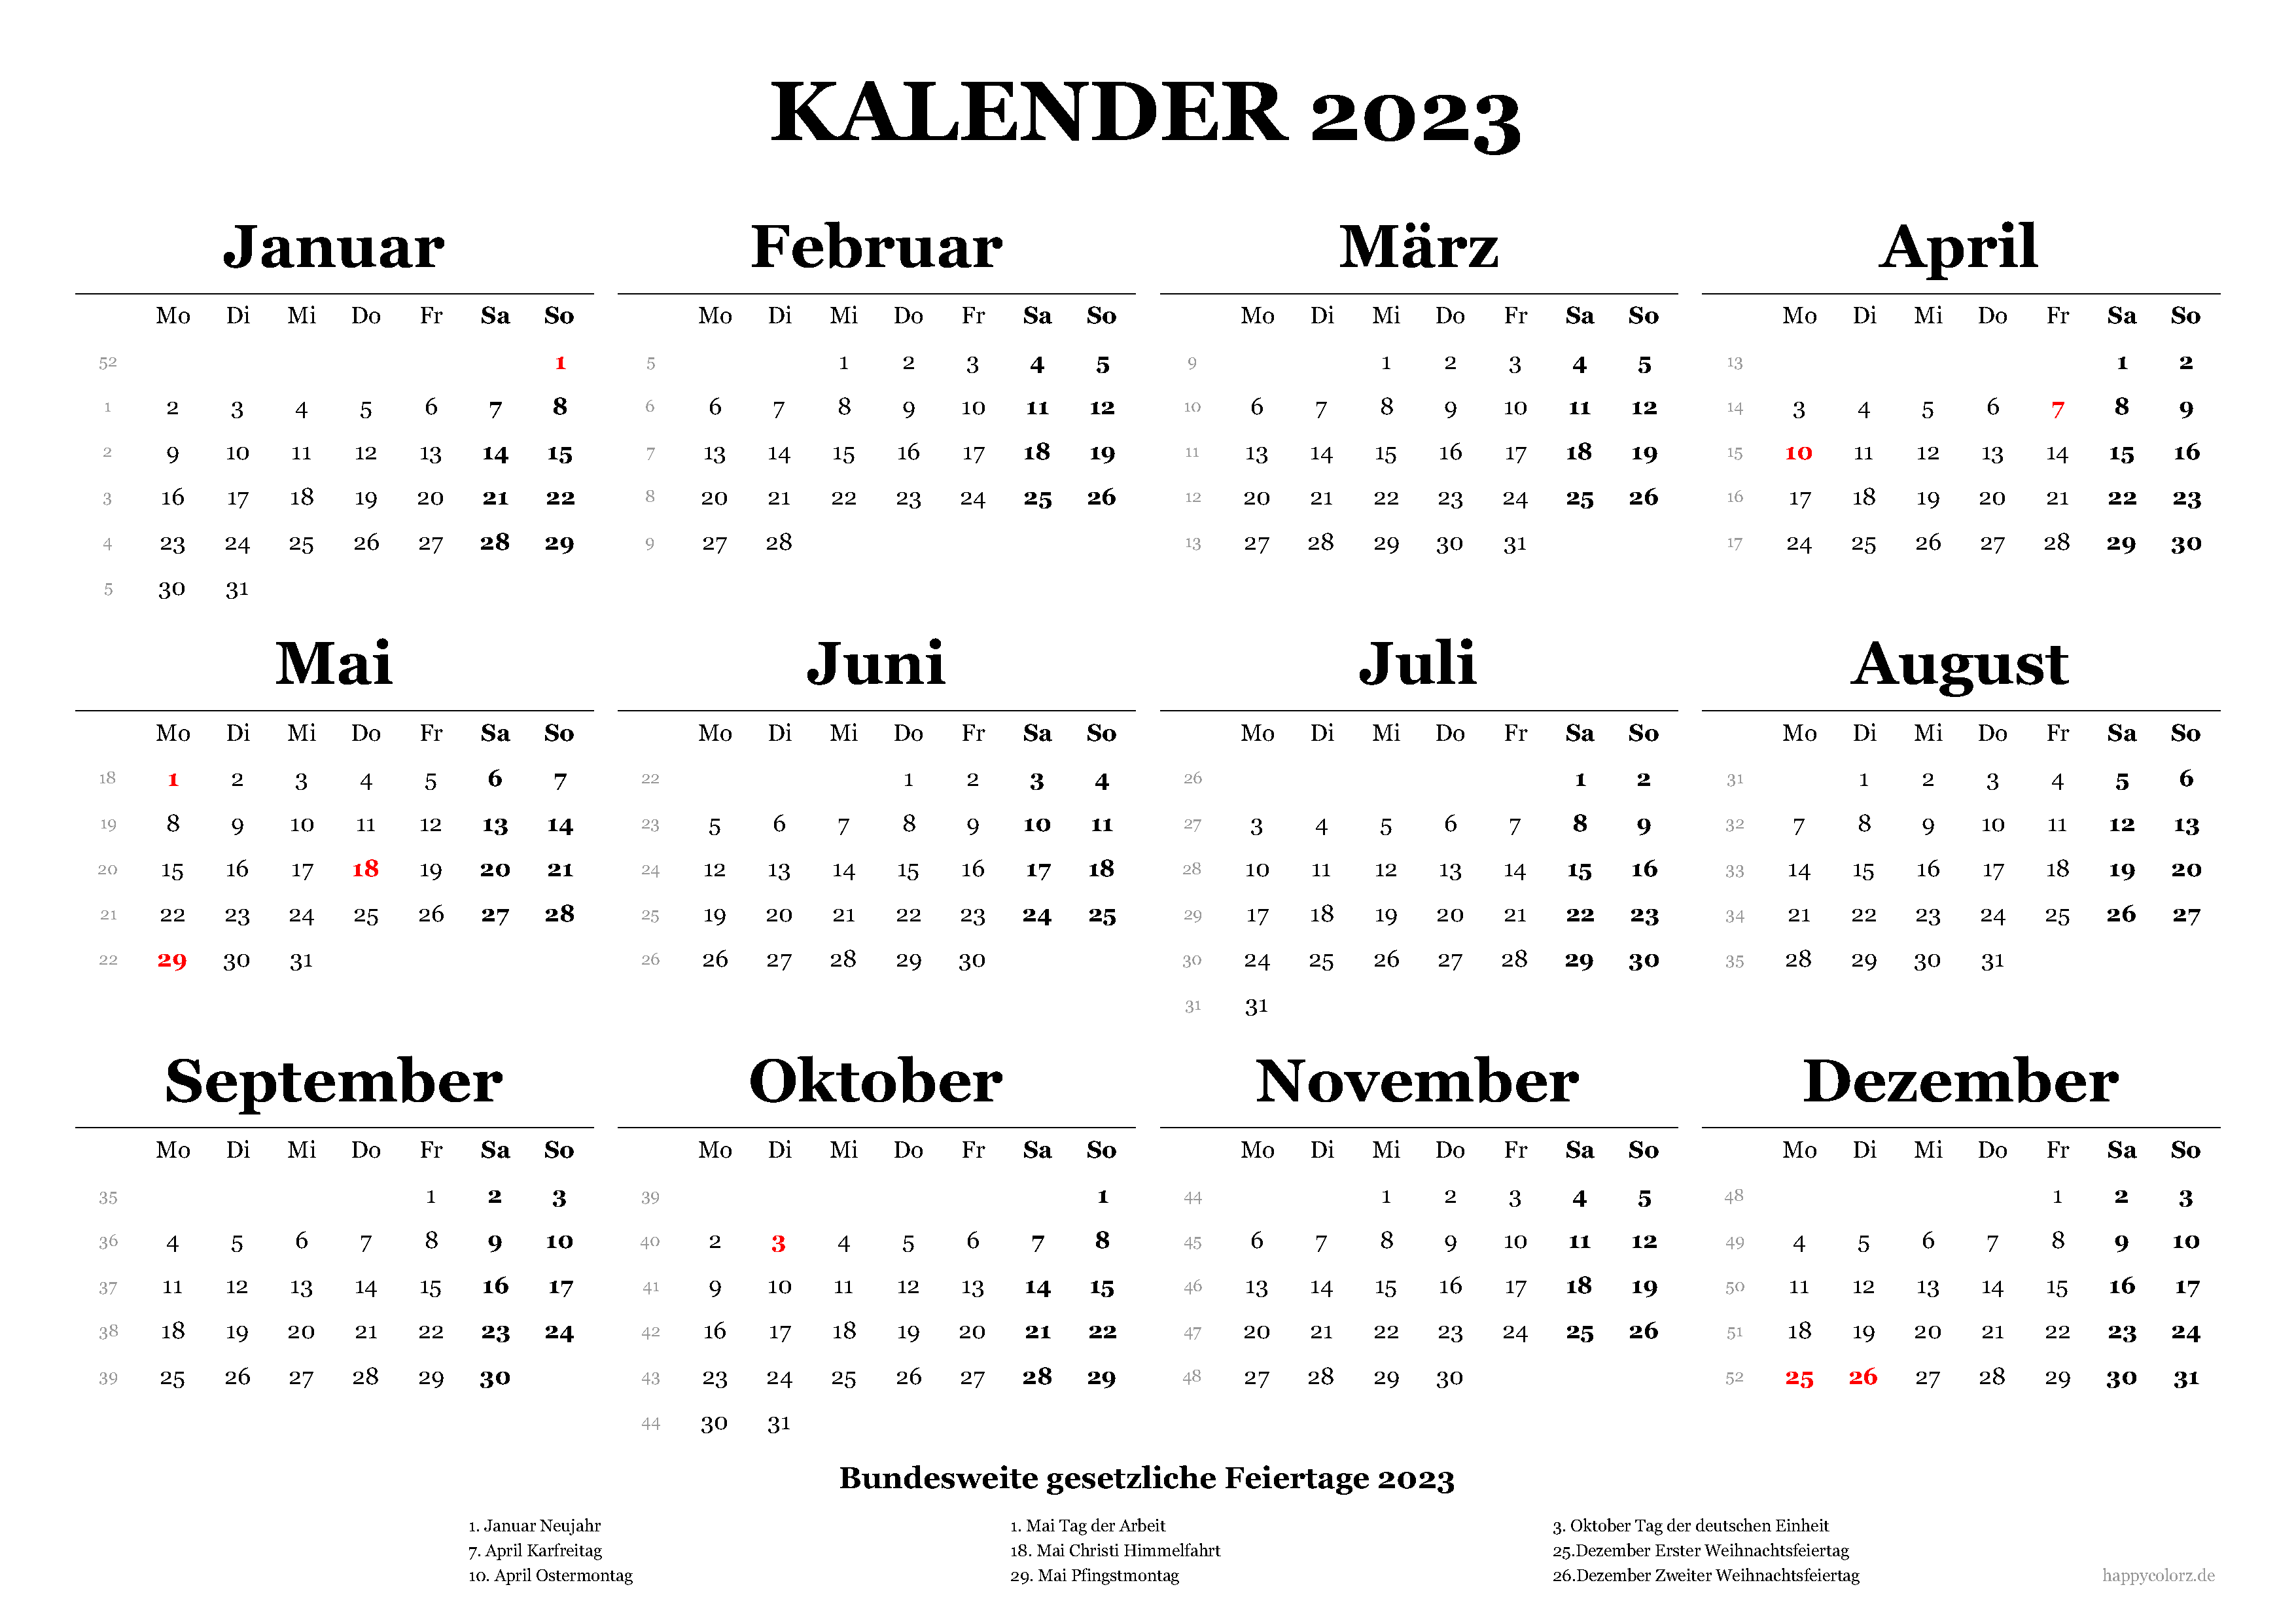 Kalender 21 mit Kalenderwochen und Feiertagen pdf, xls & png